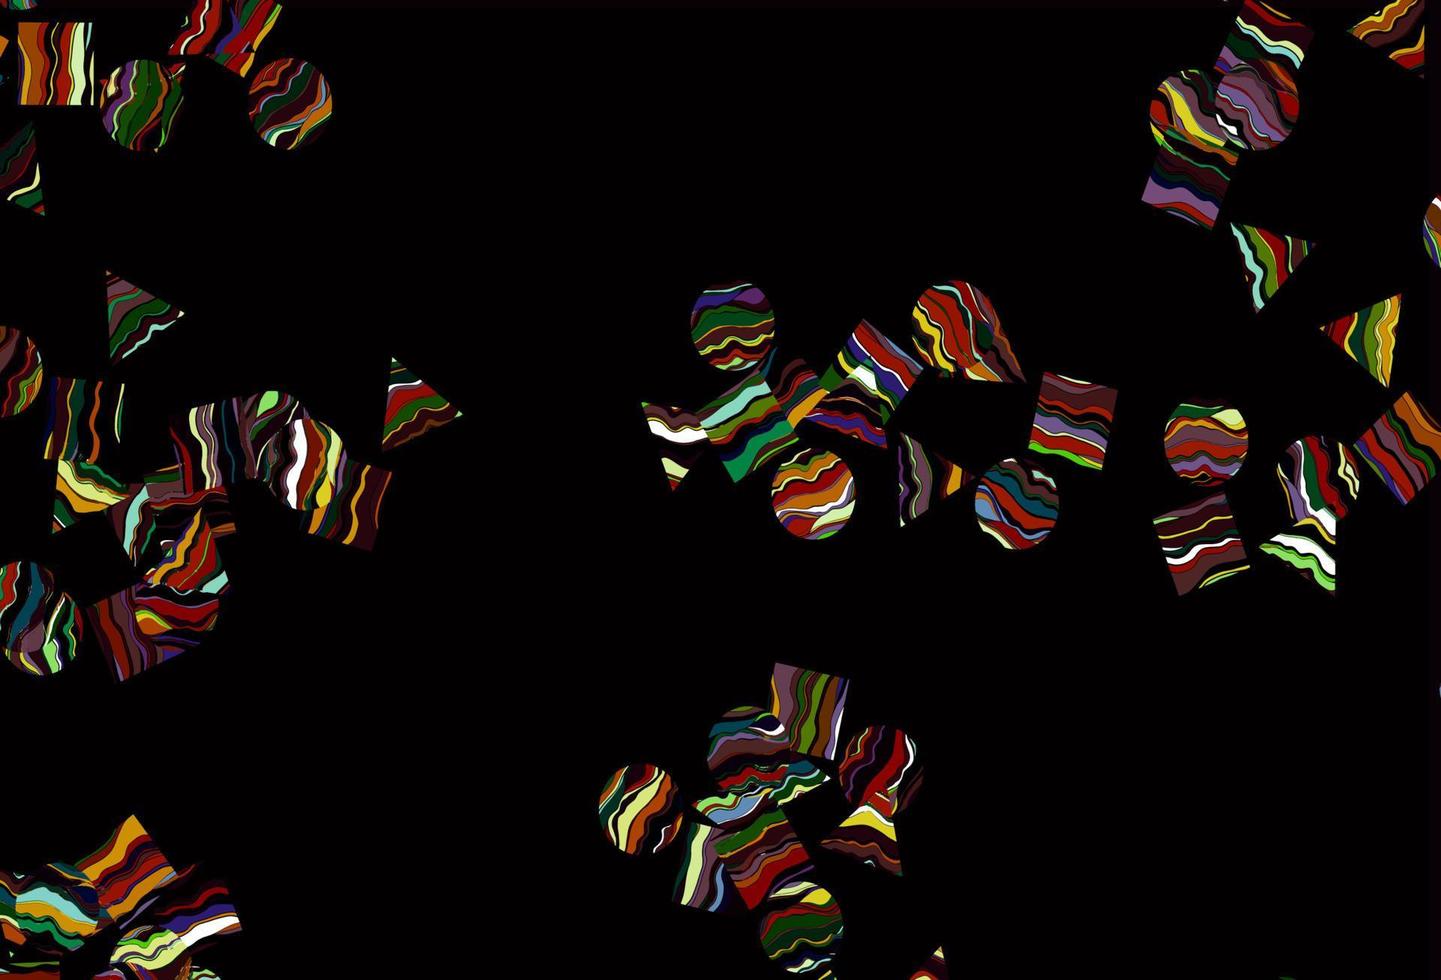 luz multicolorida, padrão de vetor de arco-íris em estilo poligonal com círculos.